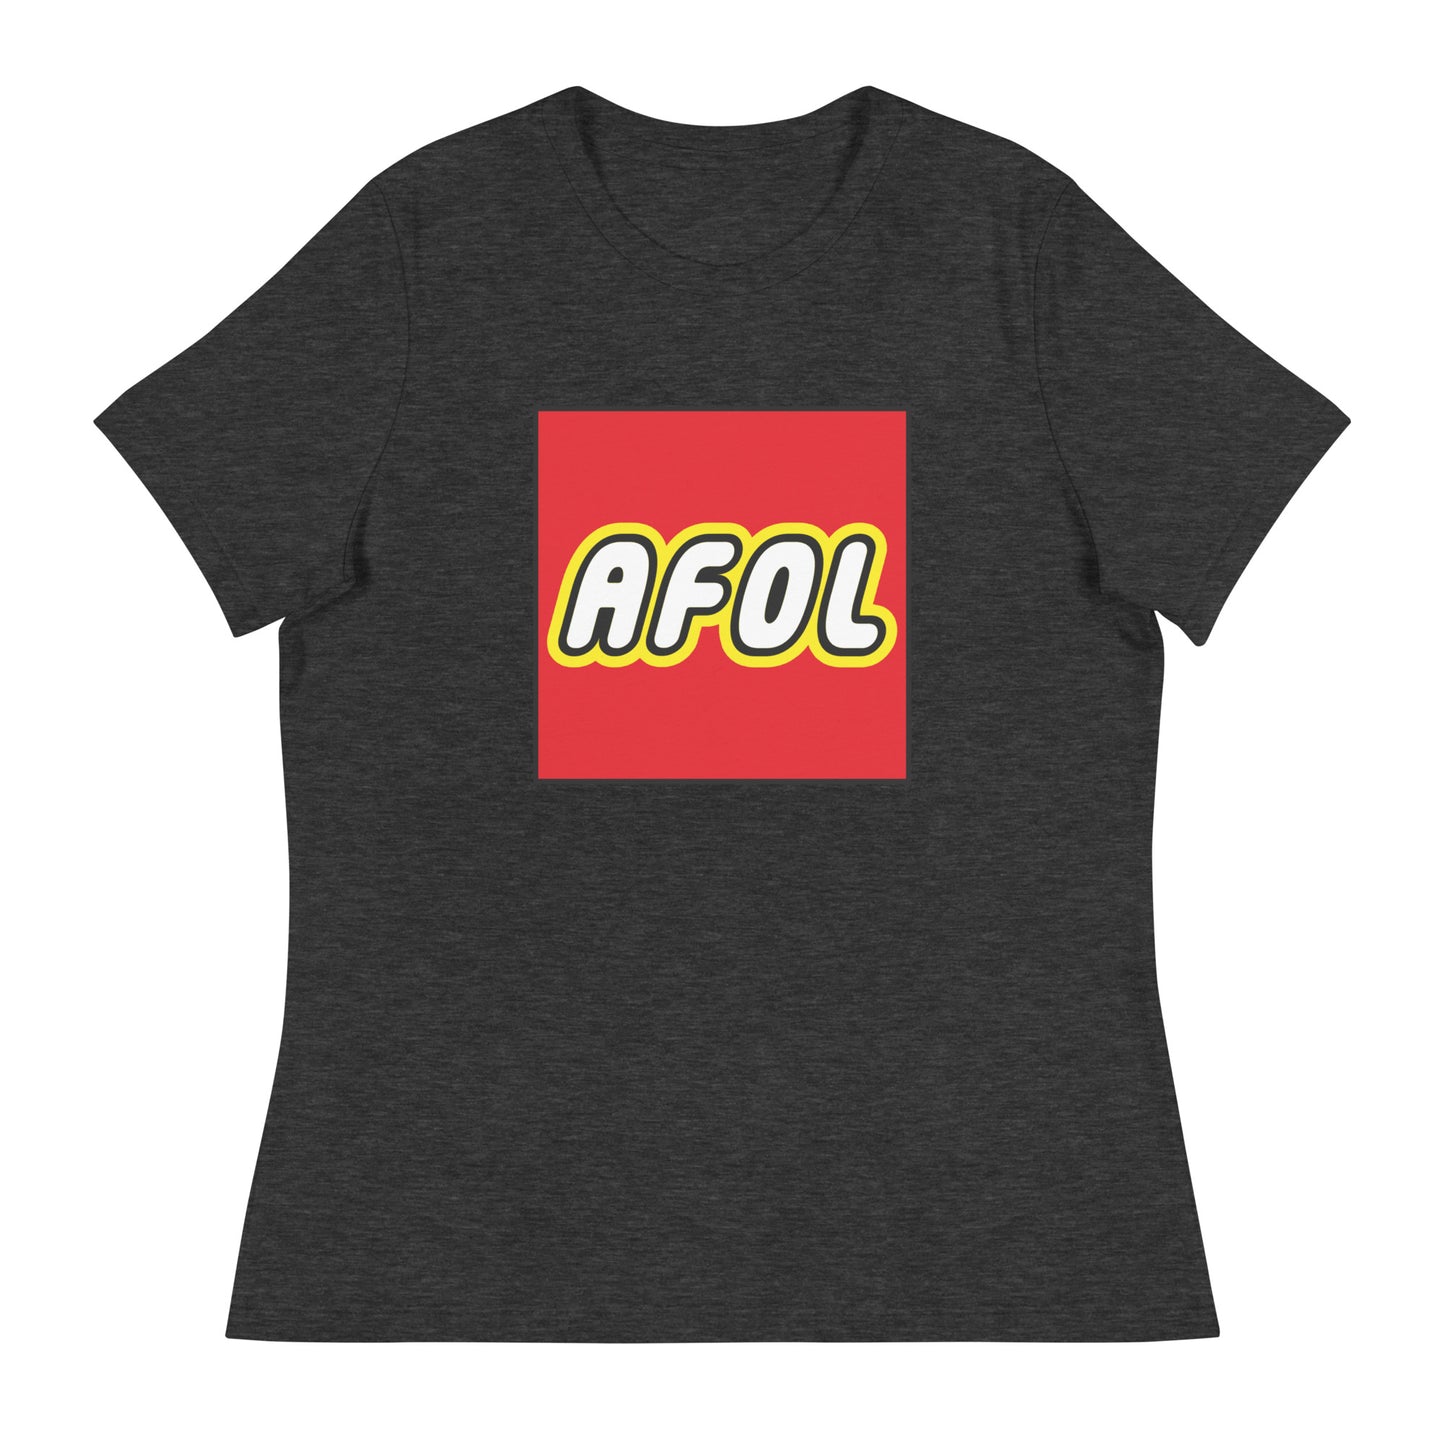 AFOL (Adult Fan of Lego) Women's Graphic Tee